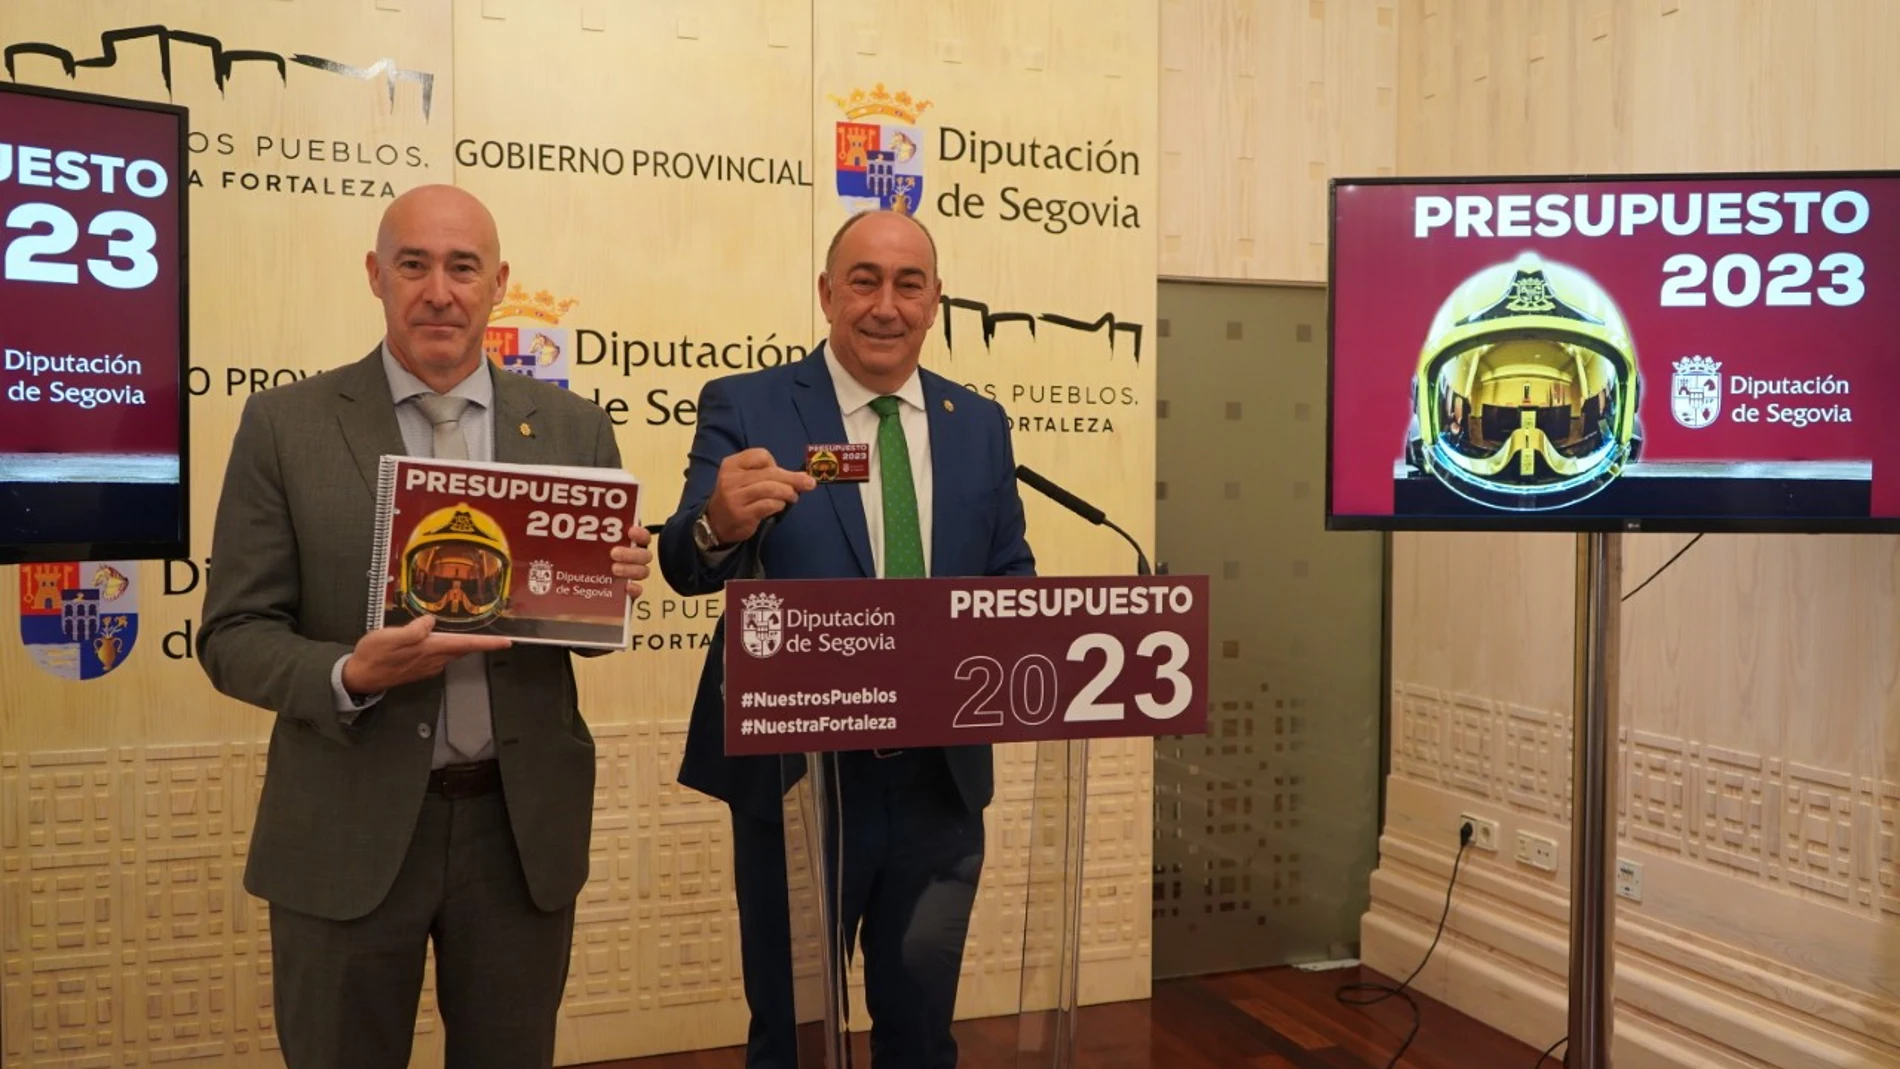 El presidente de la Diputación de Segovia, Miguel Ángel de Vicente, y el diputado Óscar Benito presentan los presupuestos para 2023